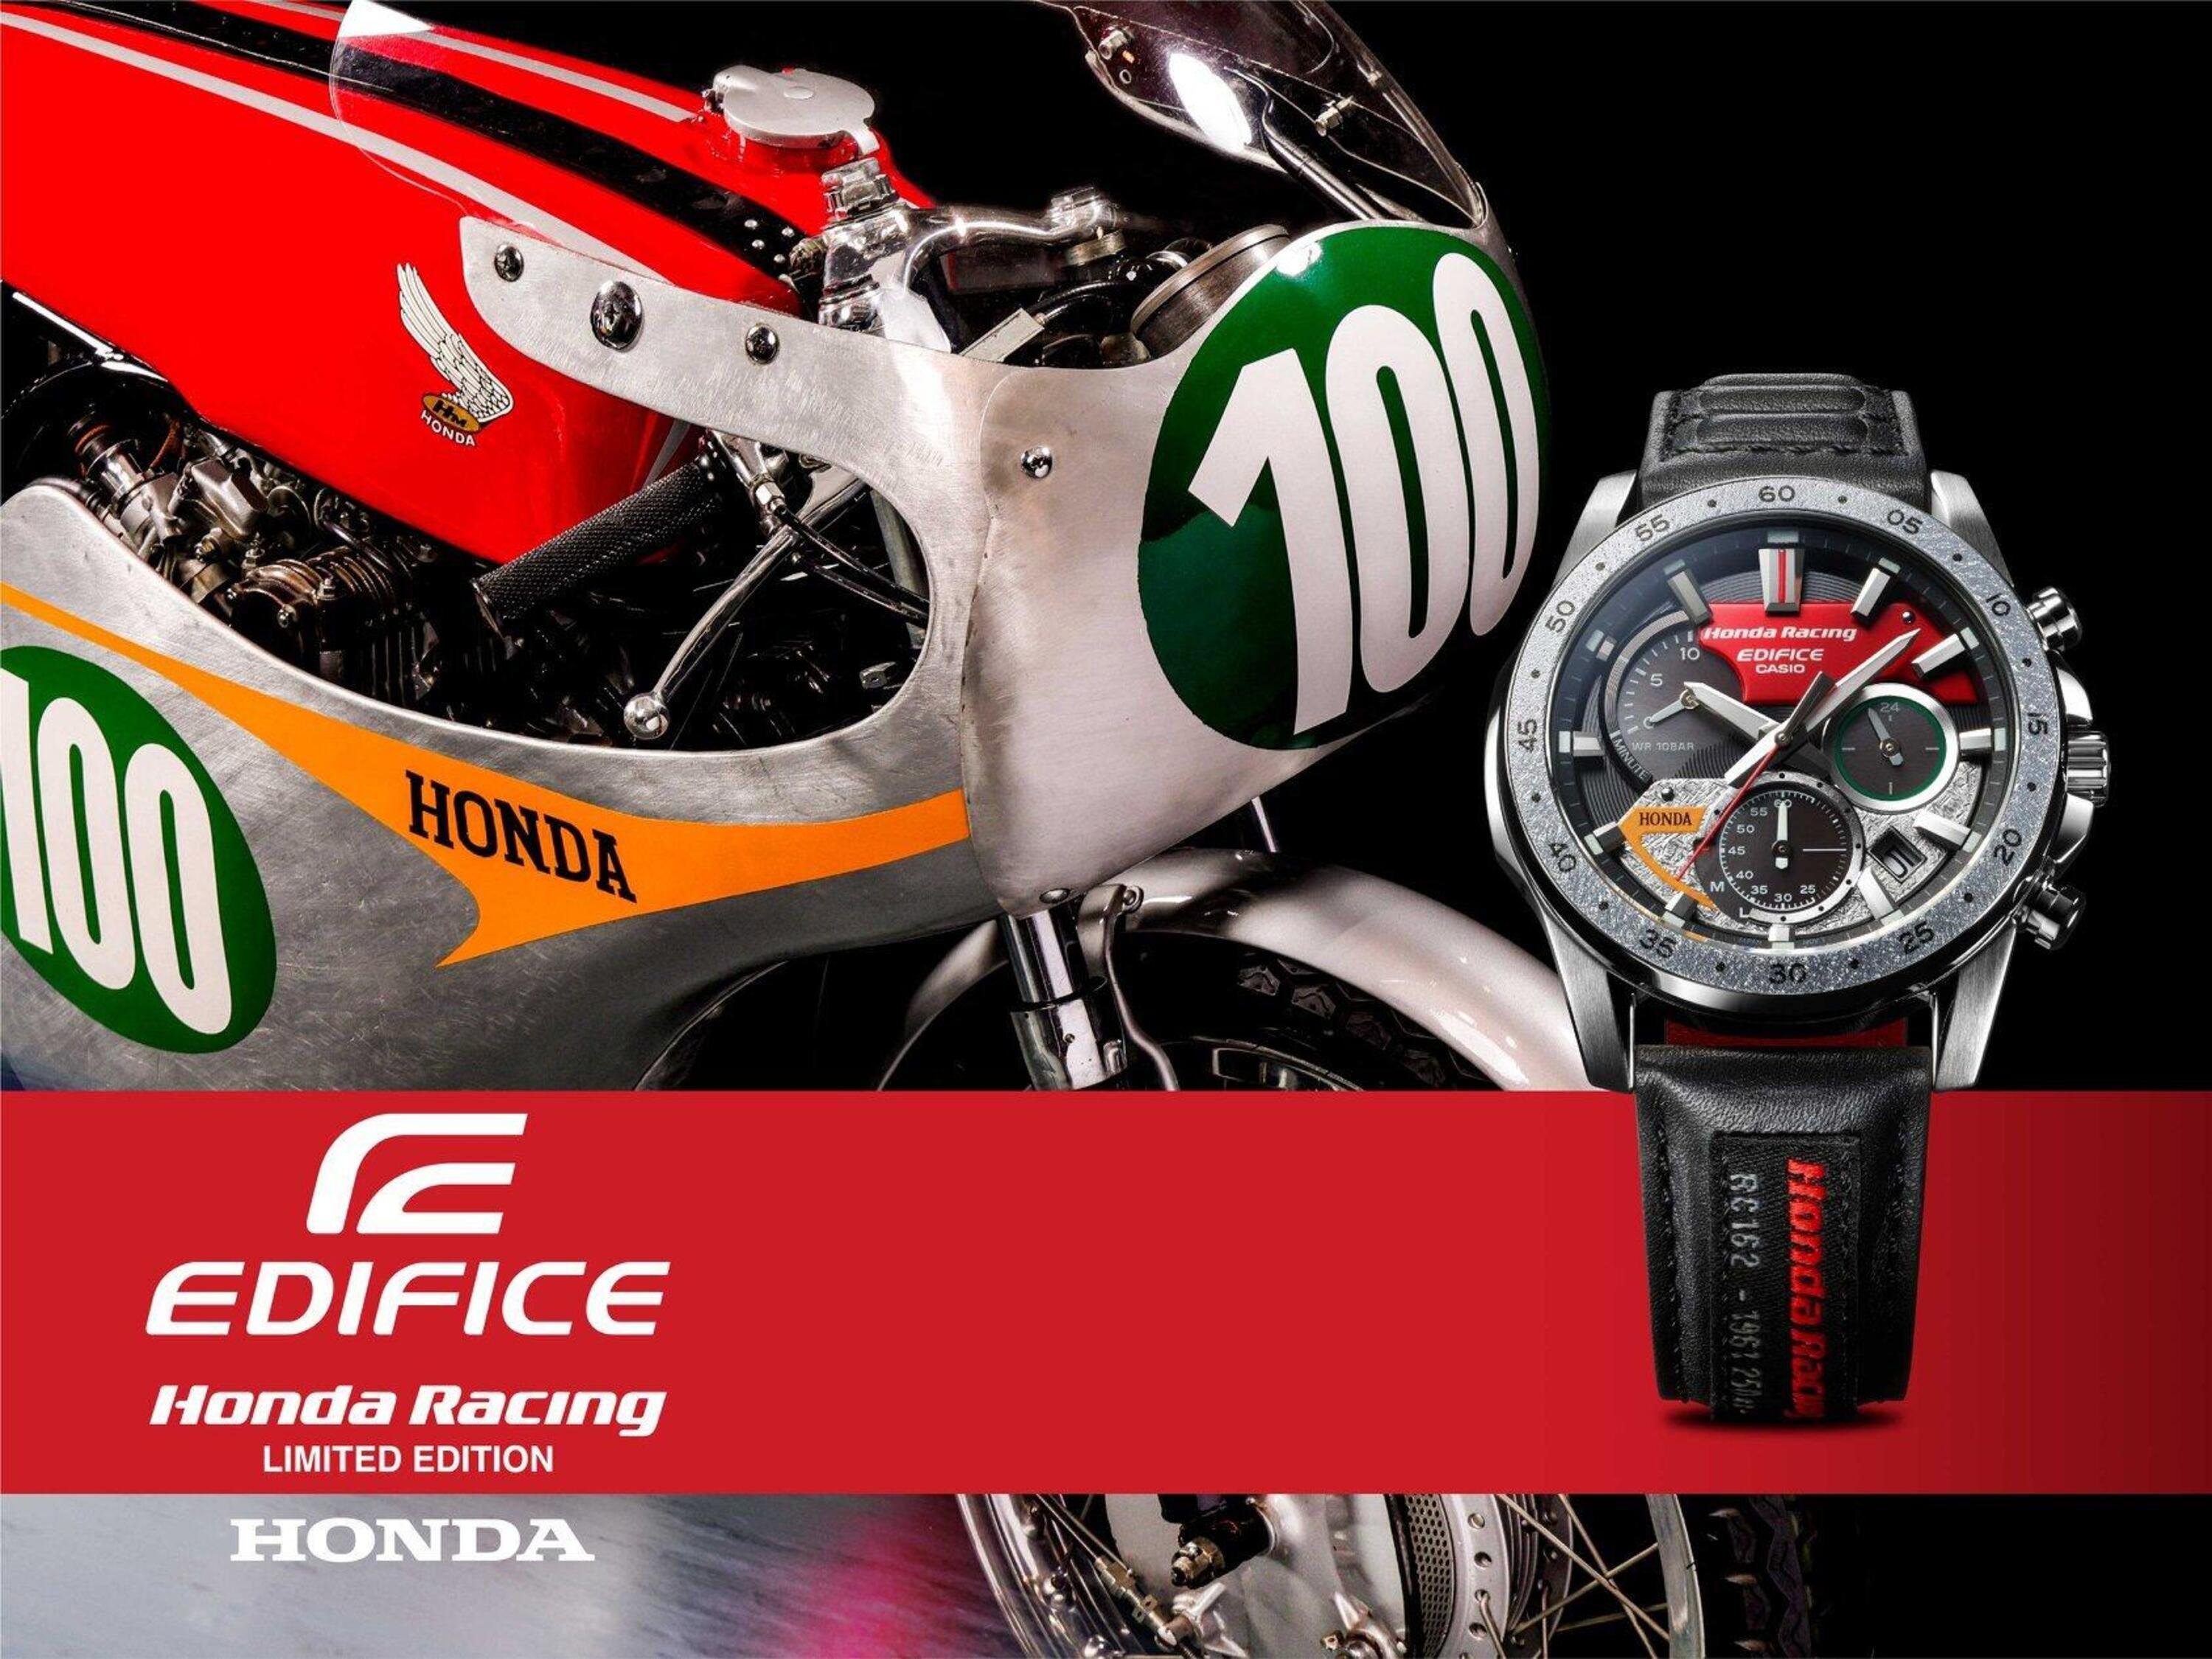 CASIO Edifice presenta il nuovo orologio dedicato alla Honda RC162